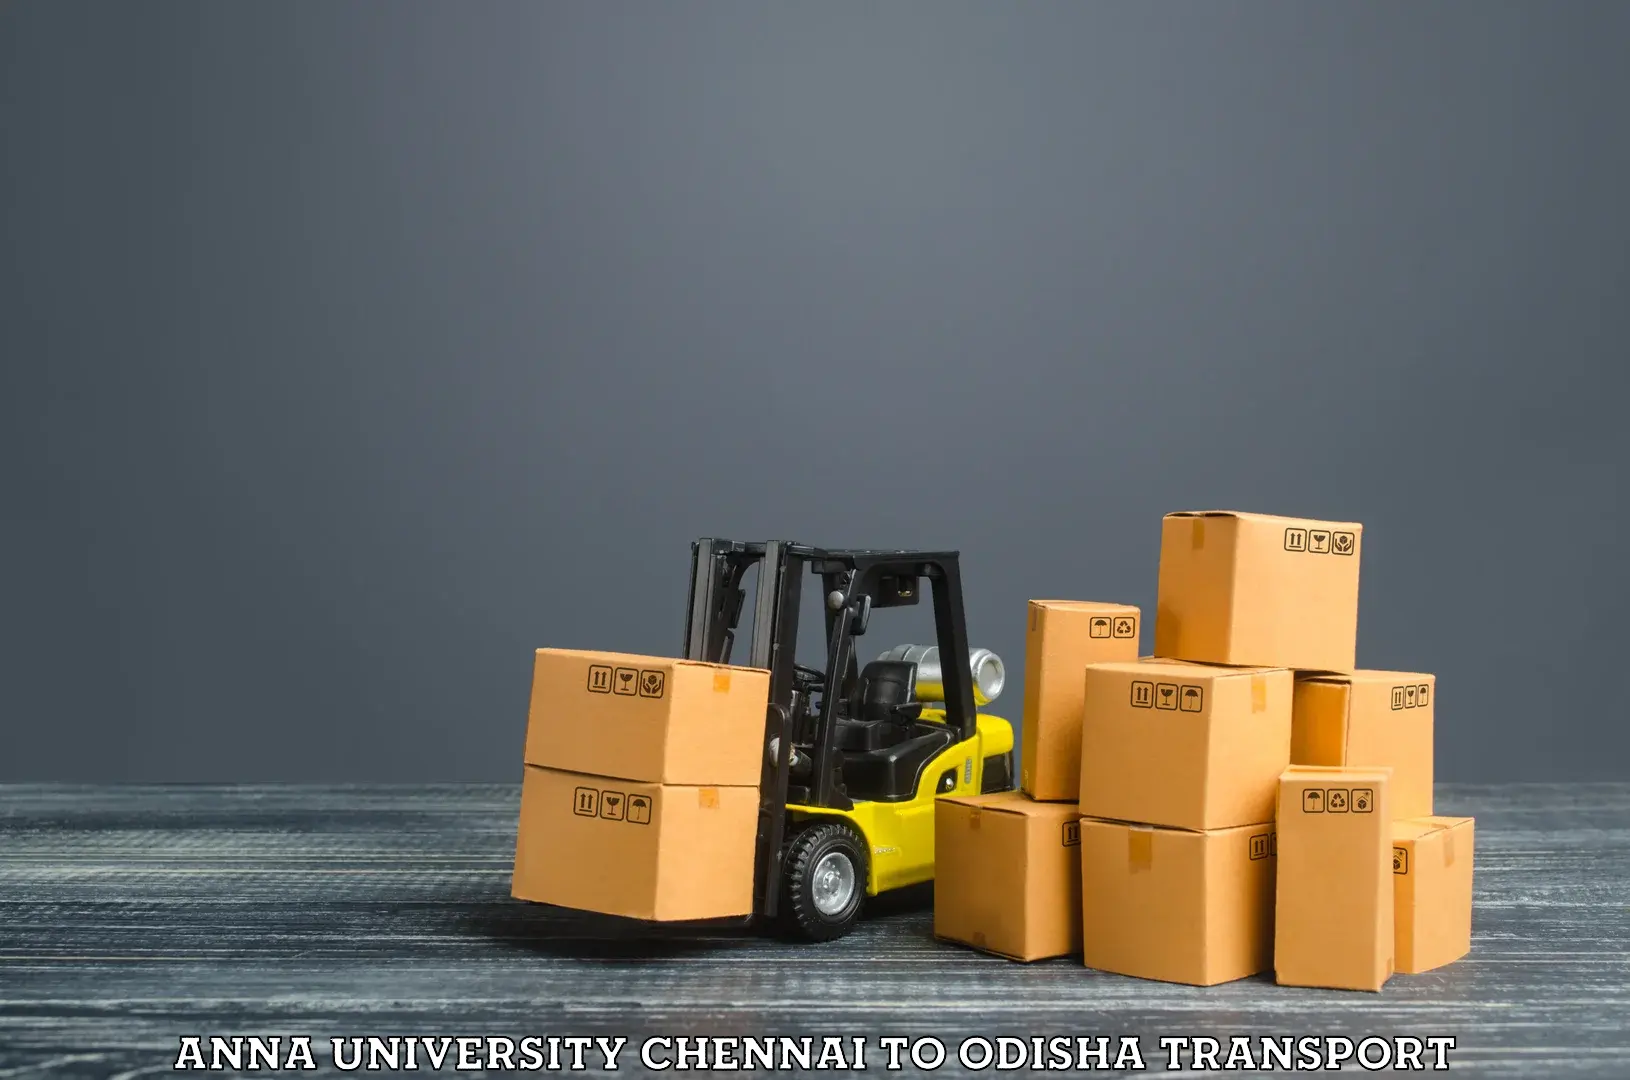 Bike shipping service Anna University Chennai to Balinga